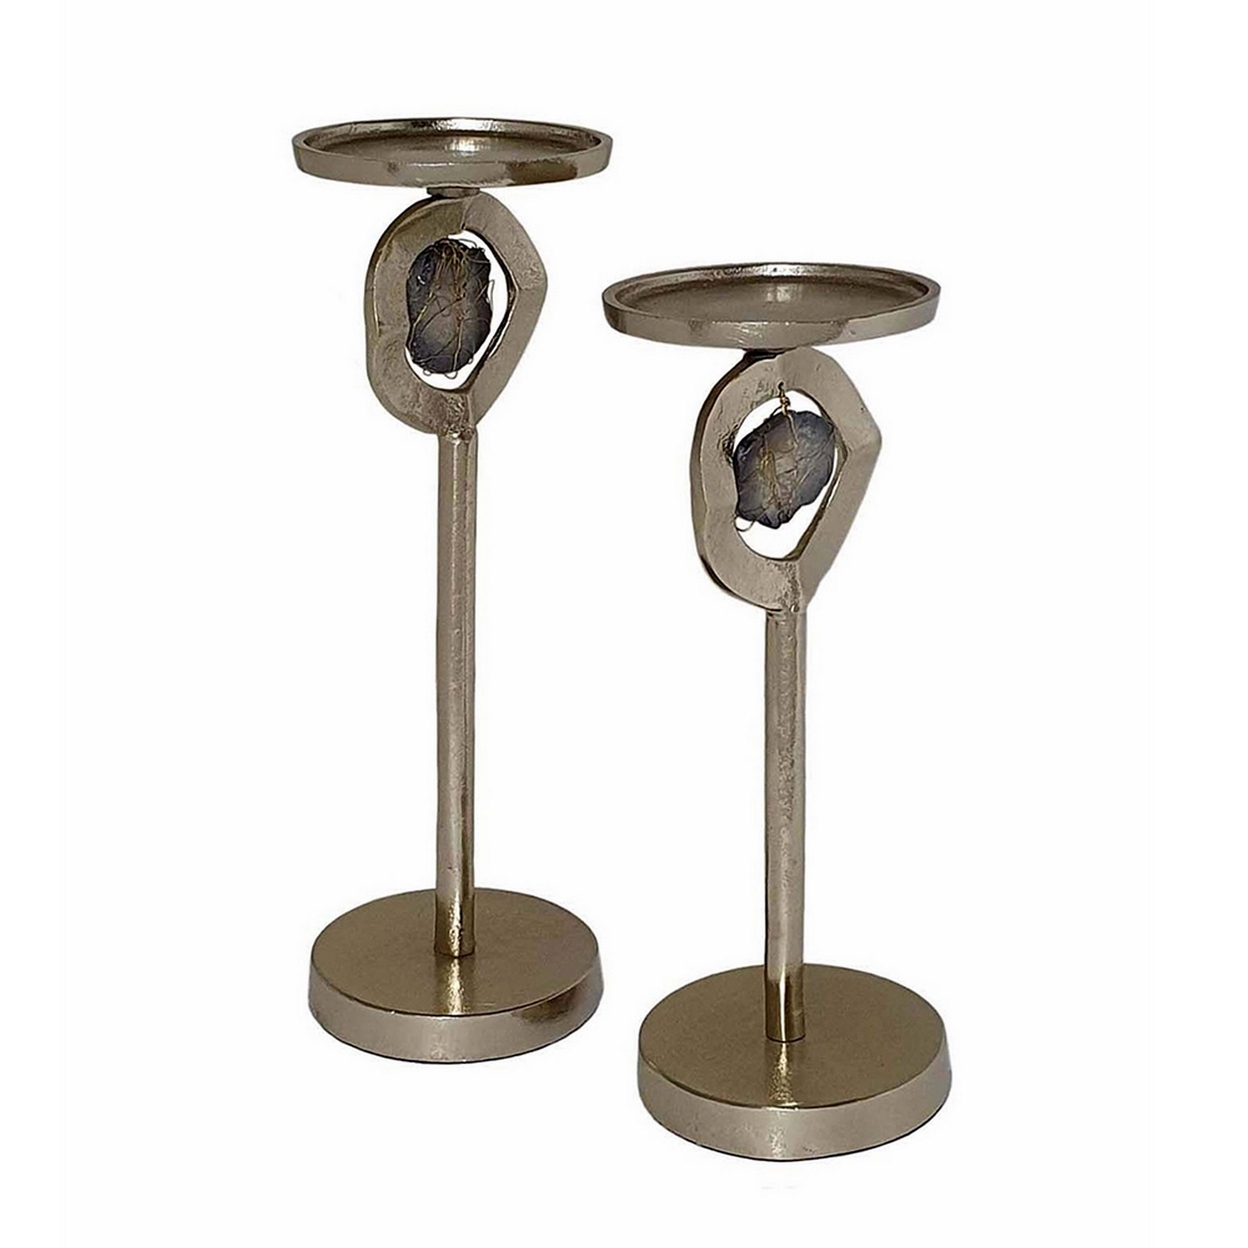 Set Of 2 Decorative Aluminum Candle Holders, Ringed Stone Design, Gold- Saltoro Sherpi